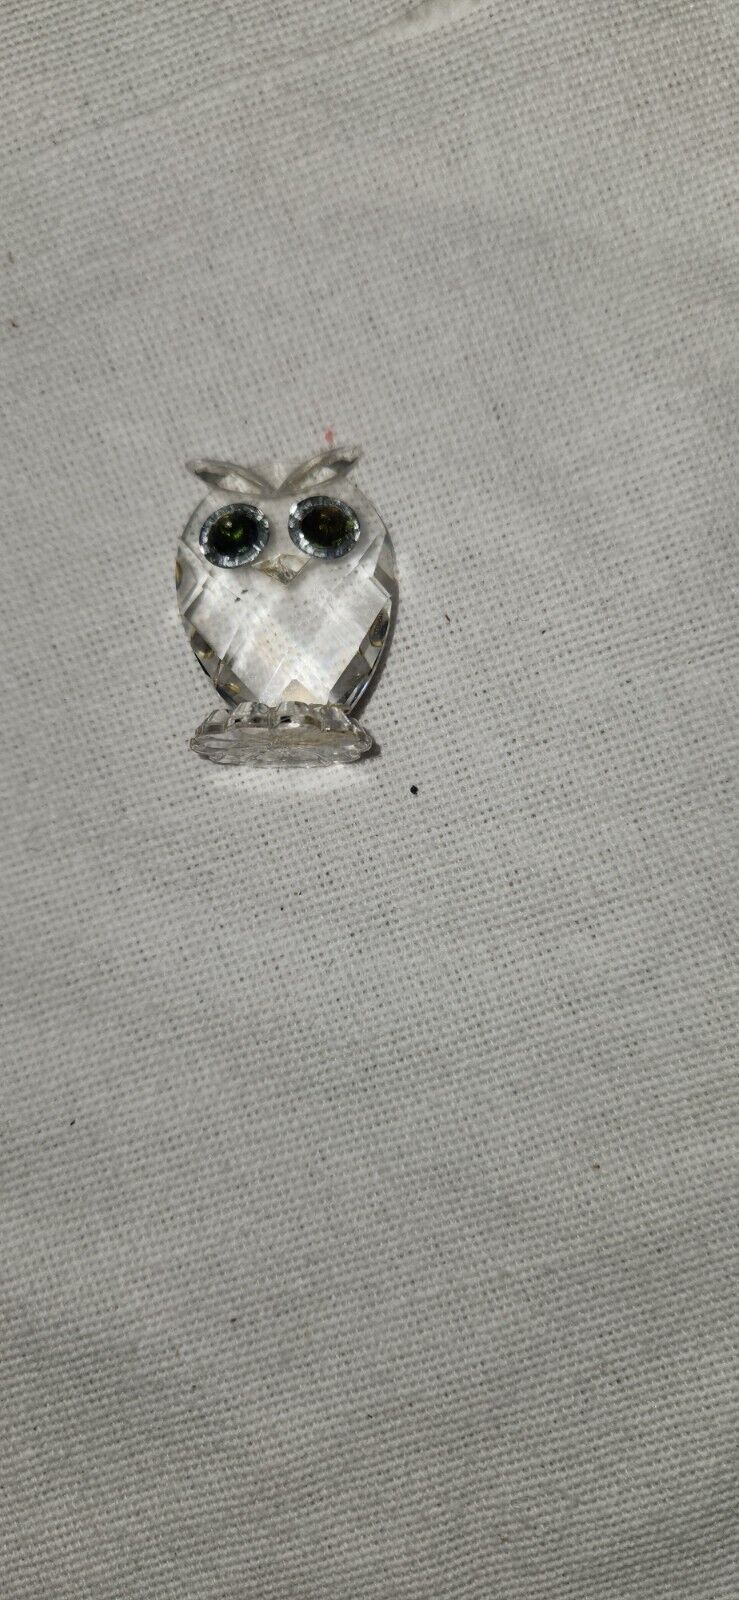 Swarovski Owl 1.5” Green Eyes